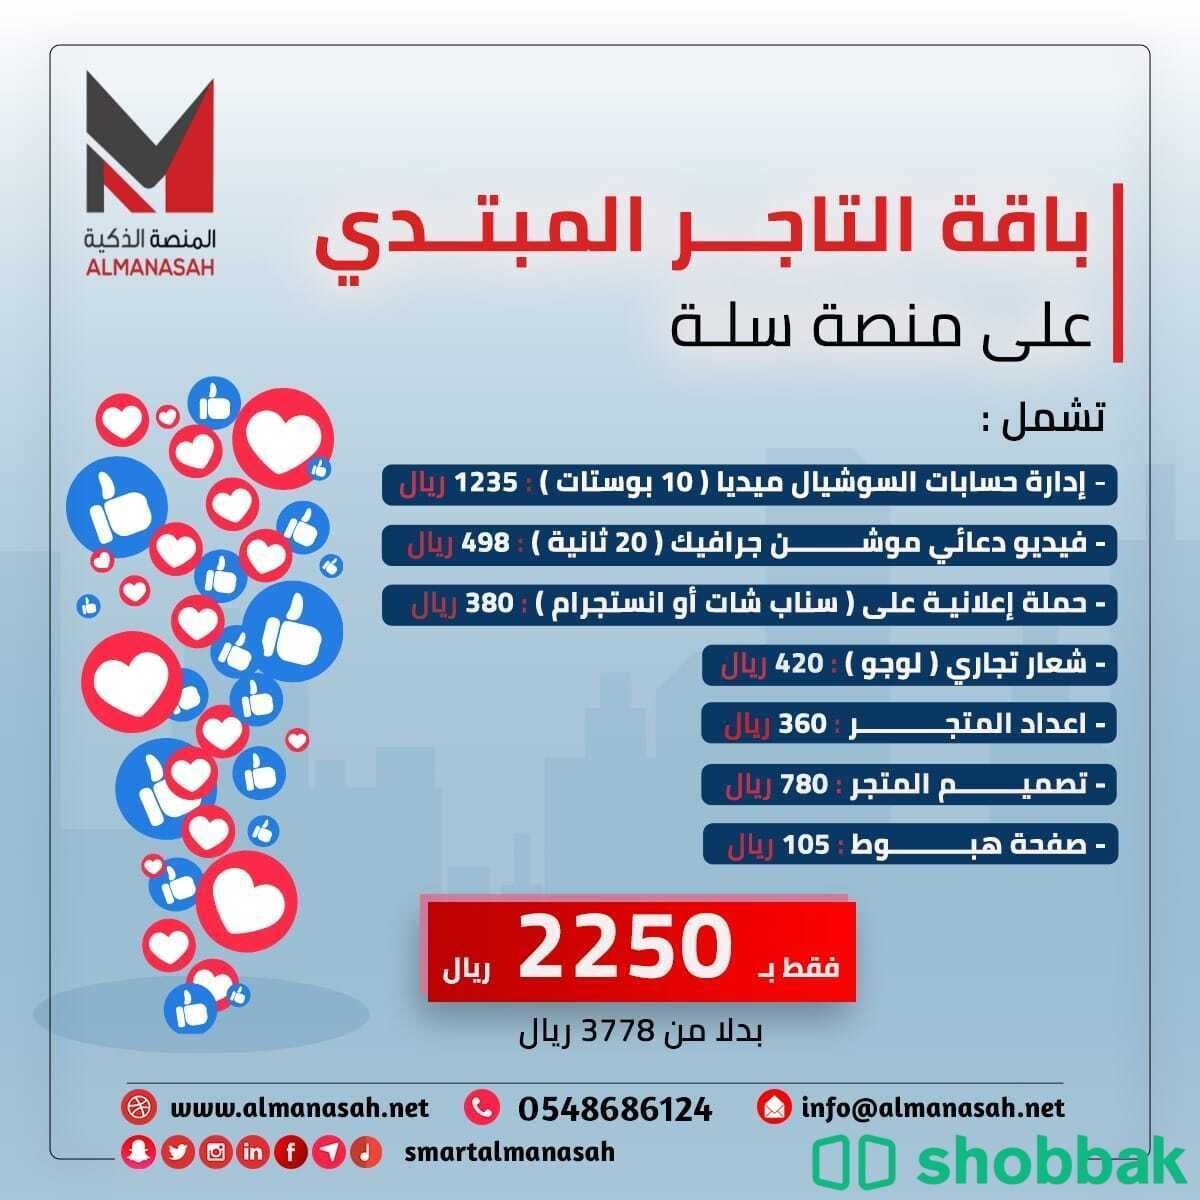 اعلانات وتسويق ابداعي للمتاجر الالكترونية Shobbak Saudi Arabia